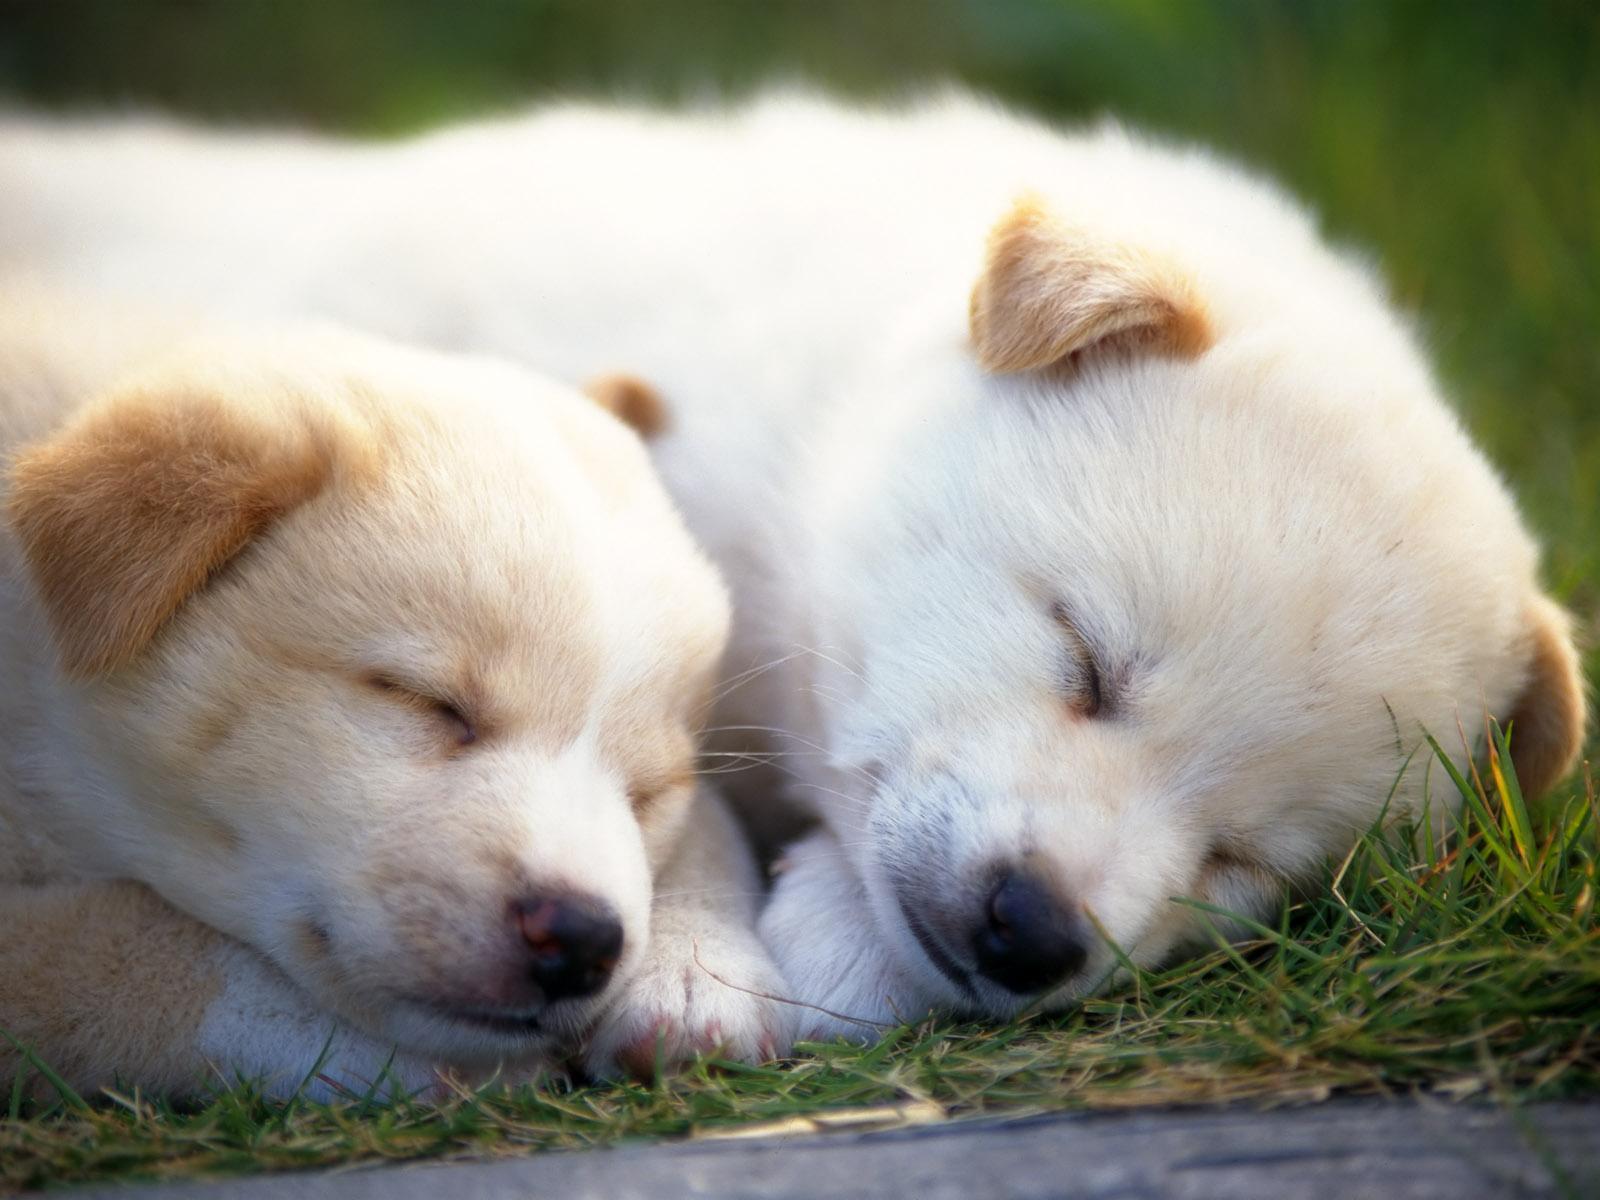 壁纸1280×1024可爱小狗宝宝图片 Lovely Puppy dogs Baby Puppies Photos壁纸,家有幼犬-可爱小狗壁纸 ...